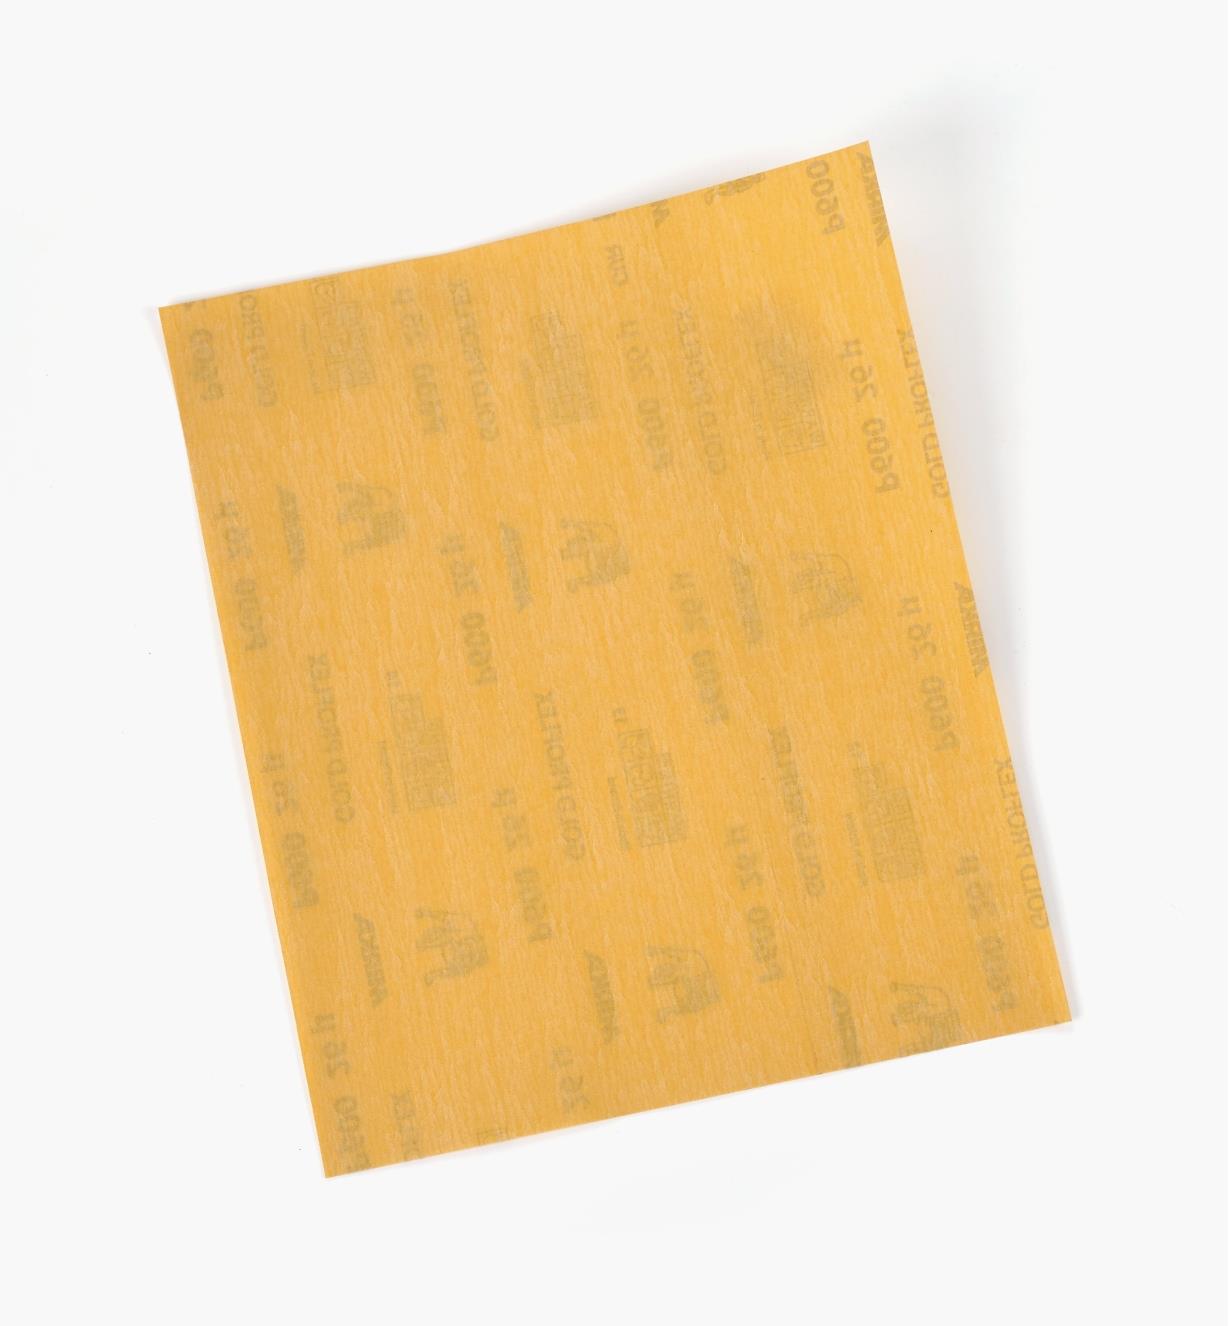 08K0110 - Papier abrasif Mirka Gold, grain 600, l'unité